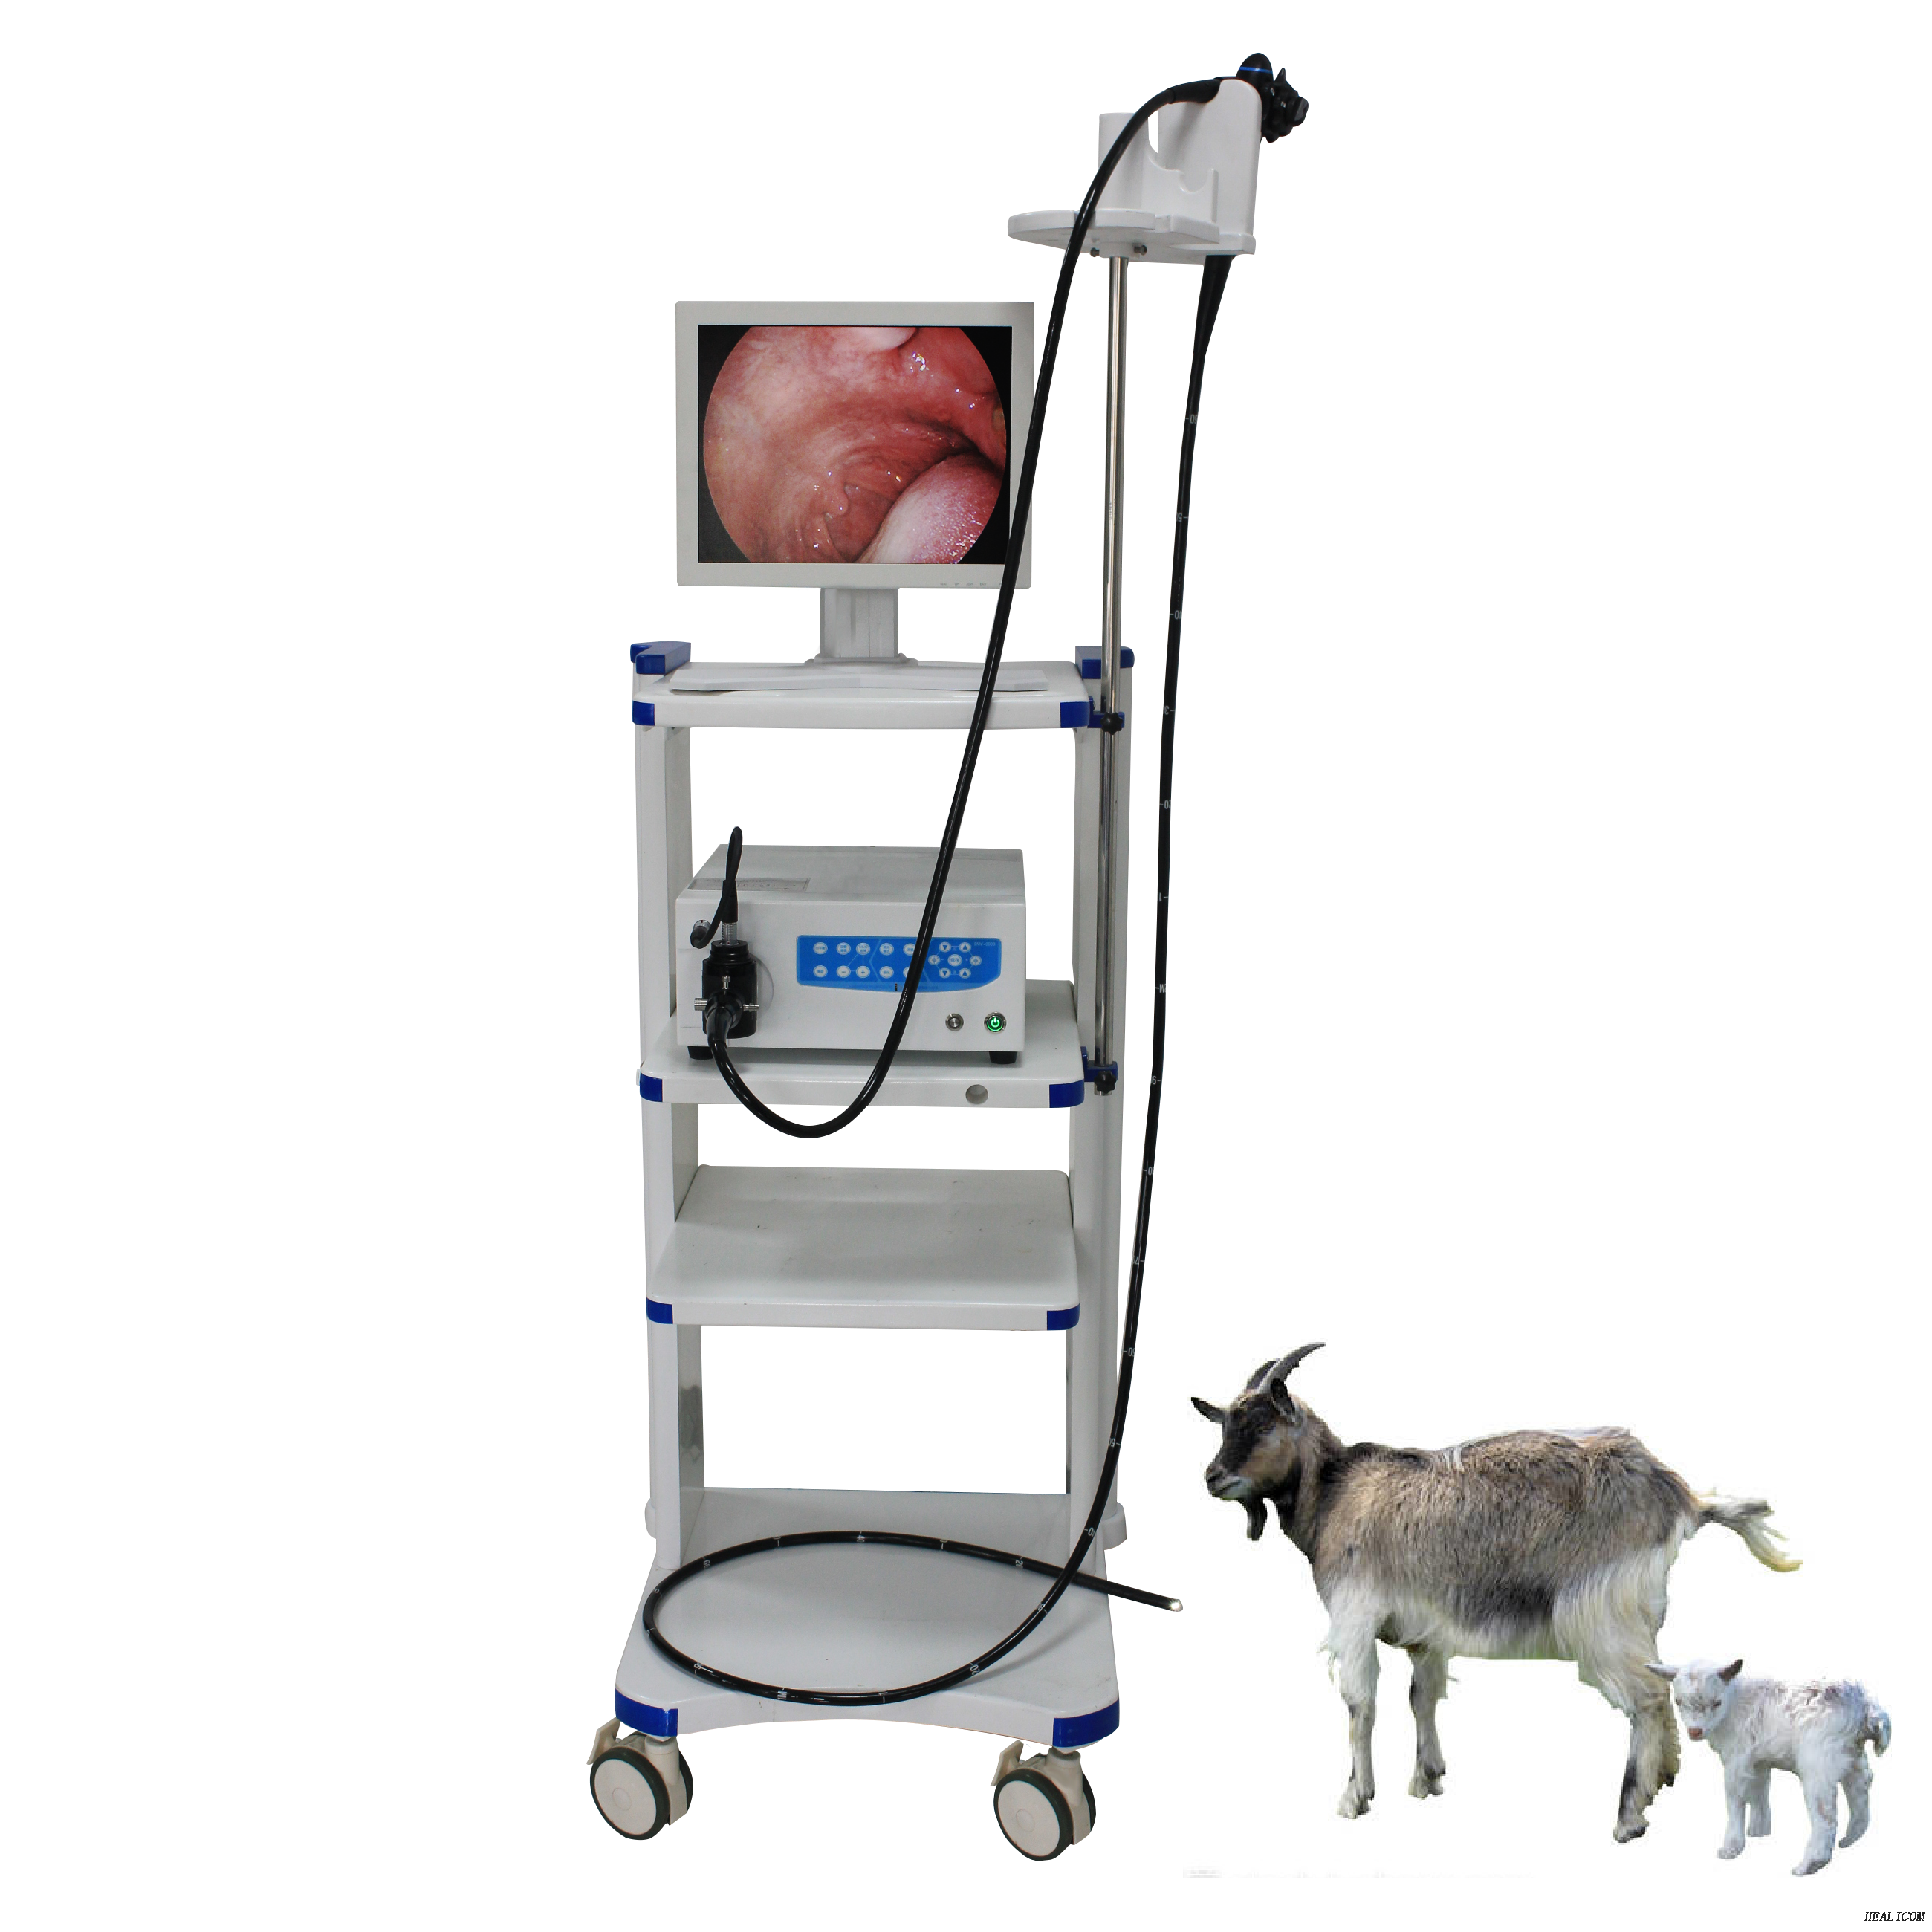 Videoendoscopio veterinario médico de alta calidad para animales pequeños WET-6000